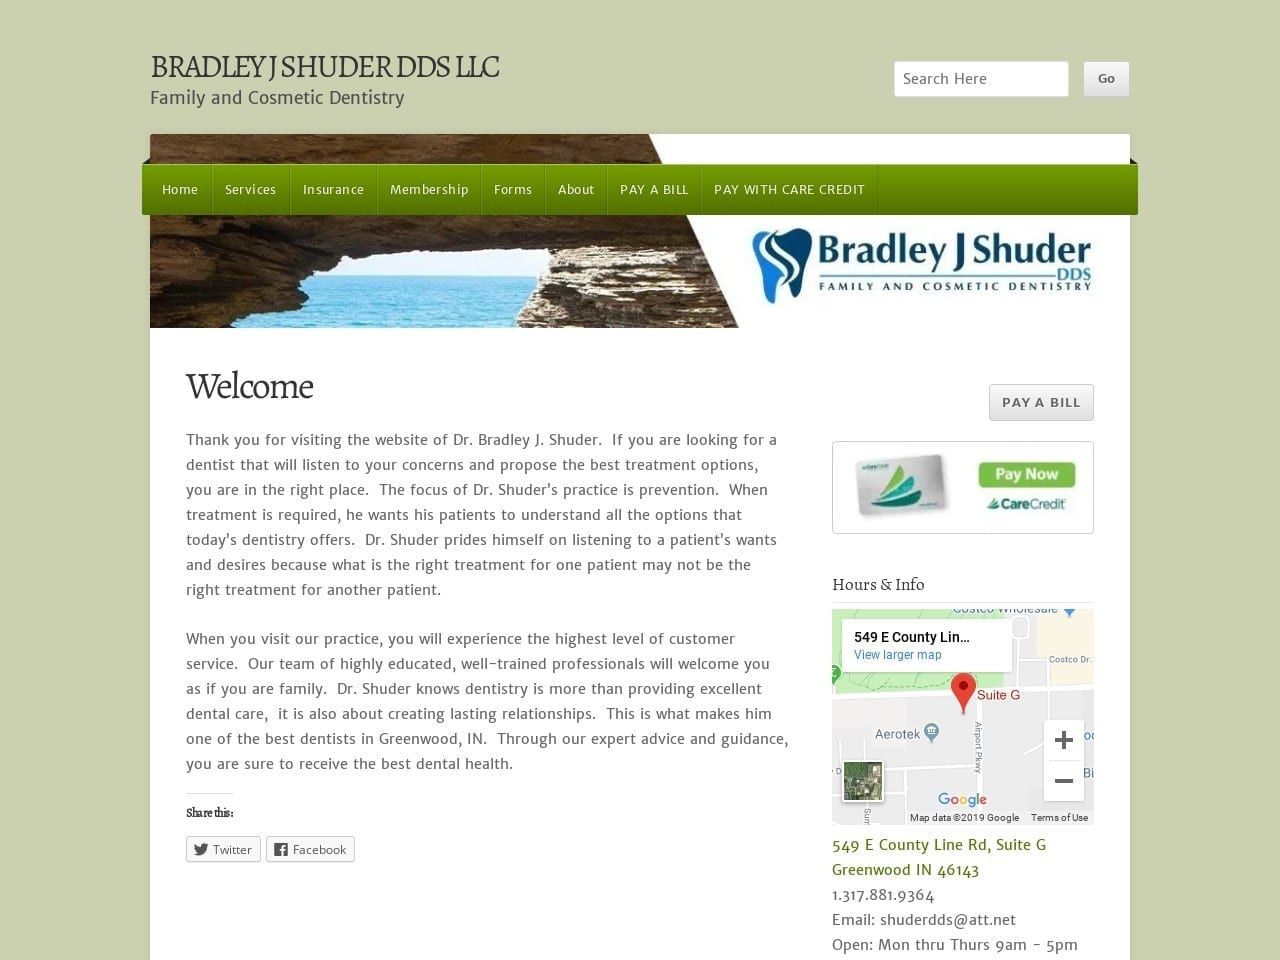 Bradley J Shuder DDS Website Screenshot from bradleyjshuderdds.com